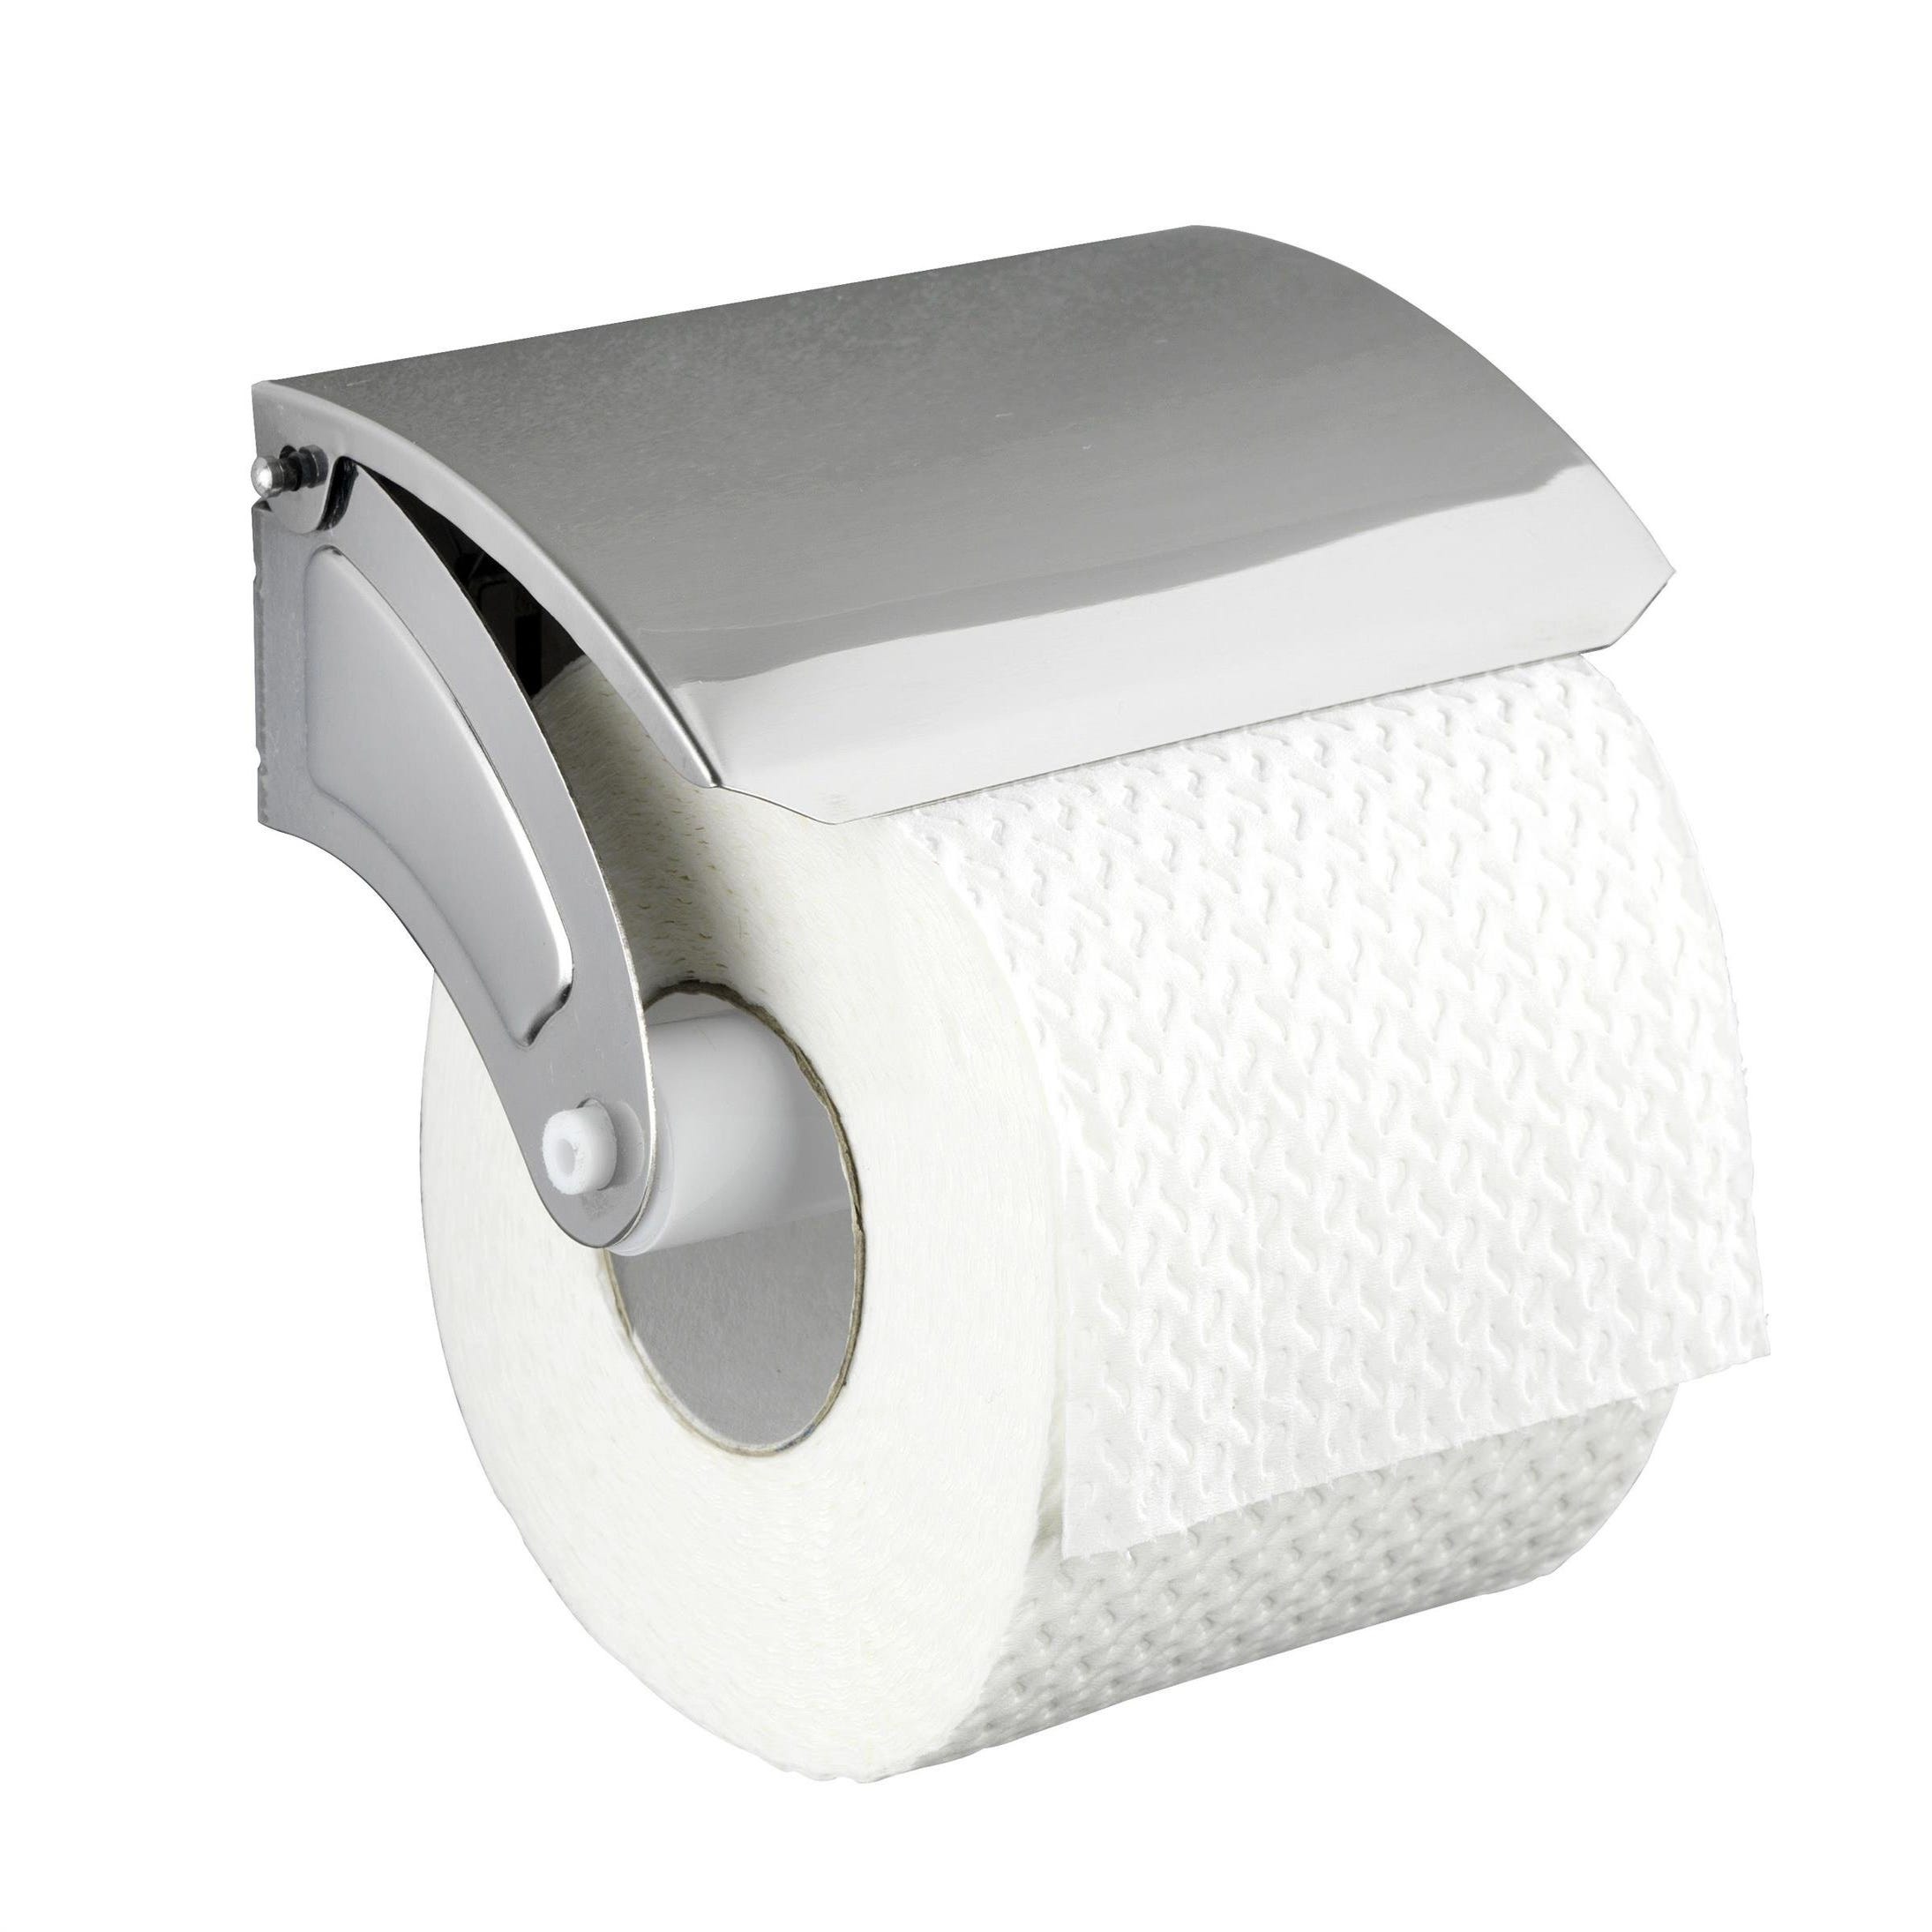 Porte papier toilette en plastique recyclé - Balein  Porte papier toilette,  Rangement papier toilette, Distributeur papier toilette